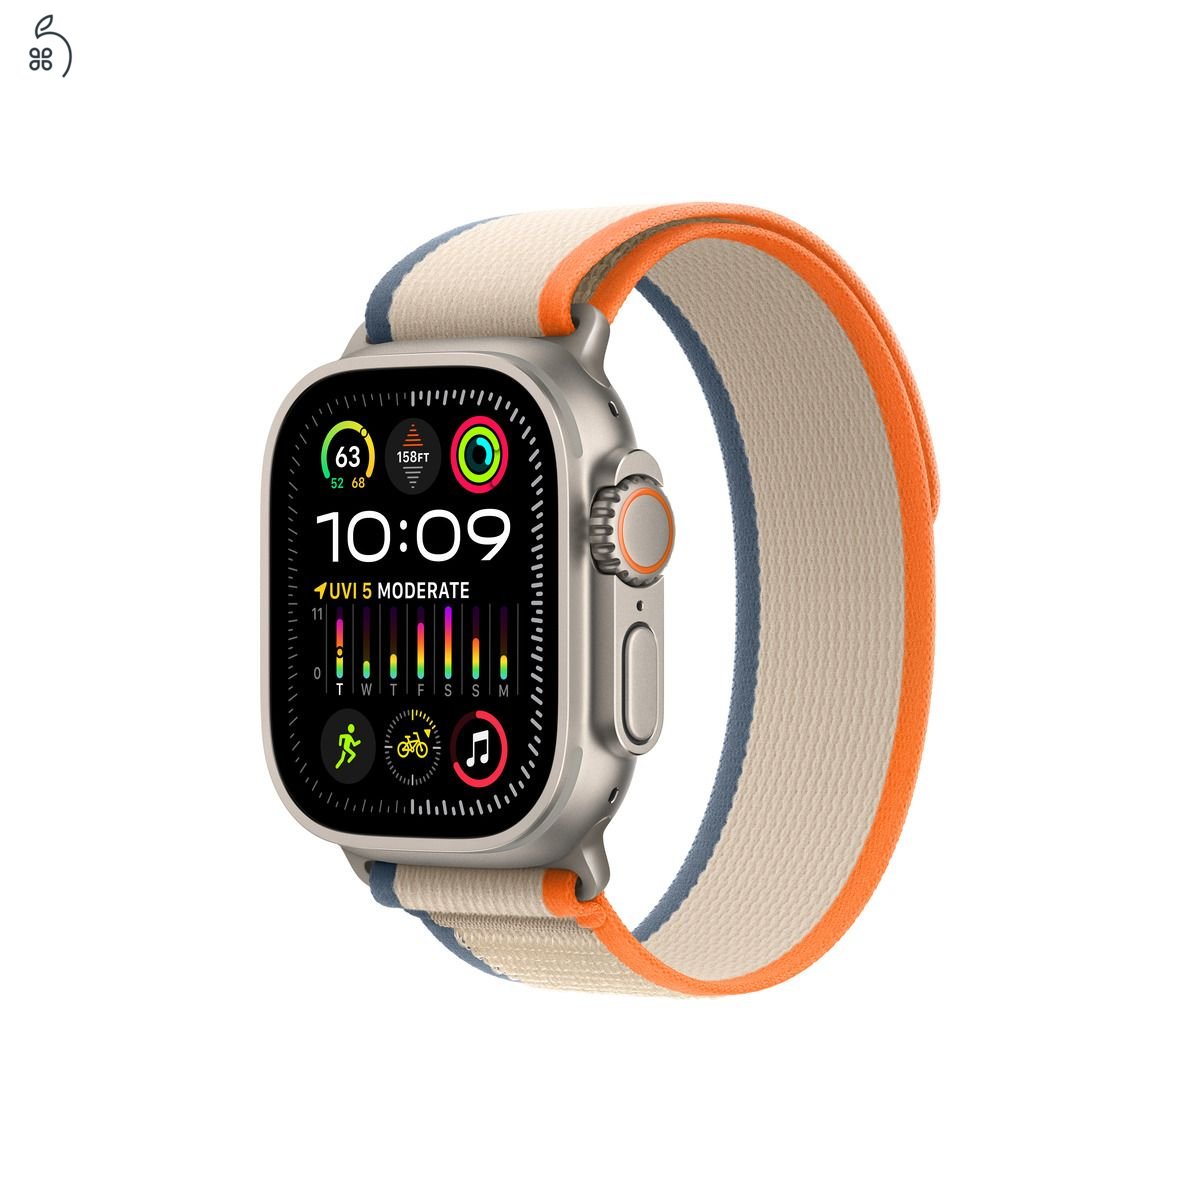 Apple4You! Apple Watch szíjjak - Több színben és méretben!